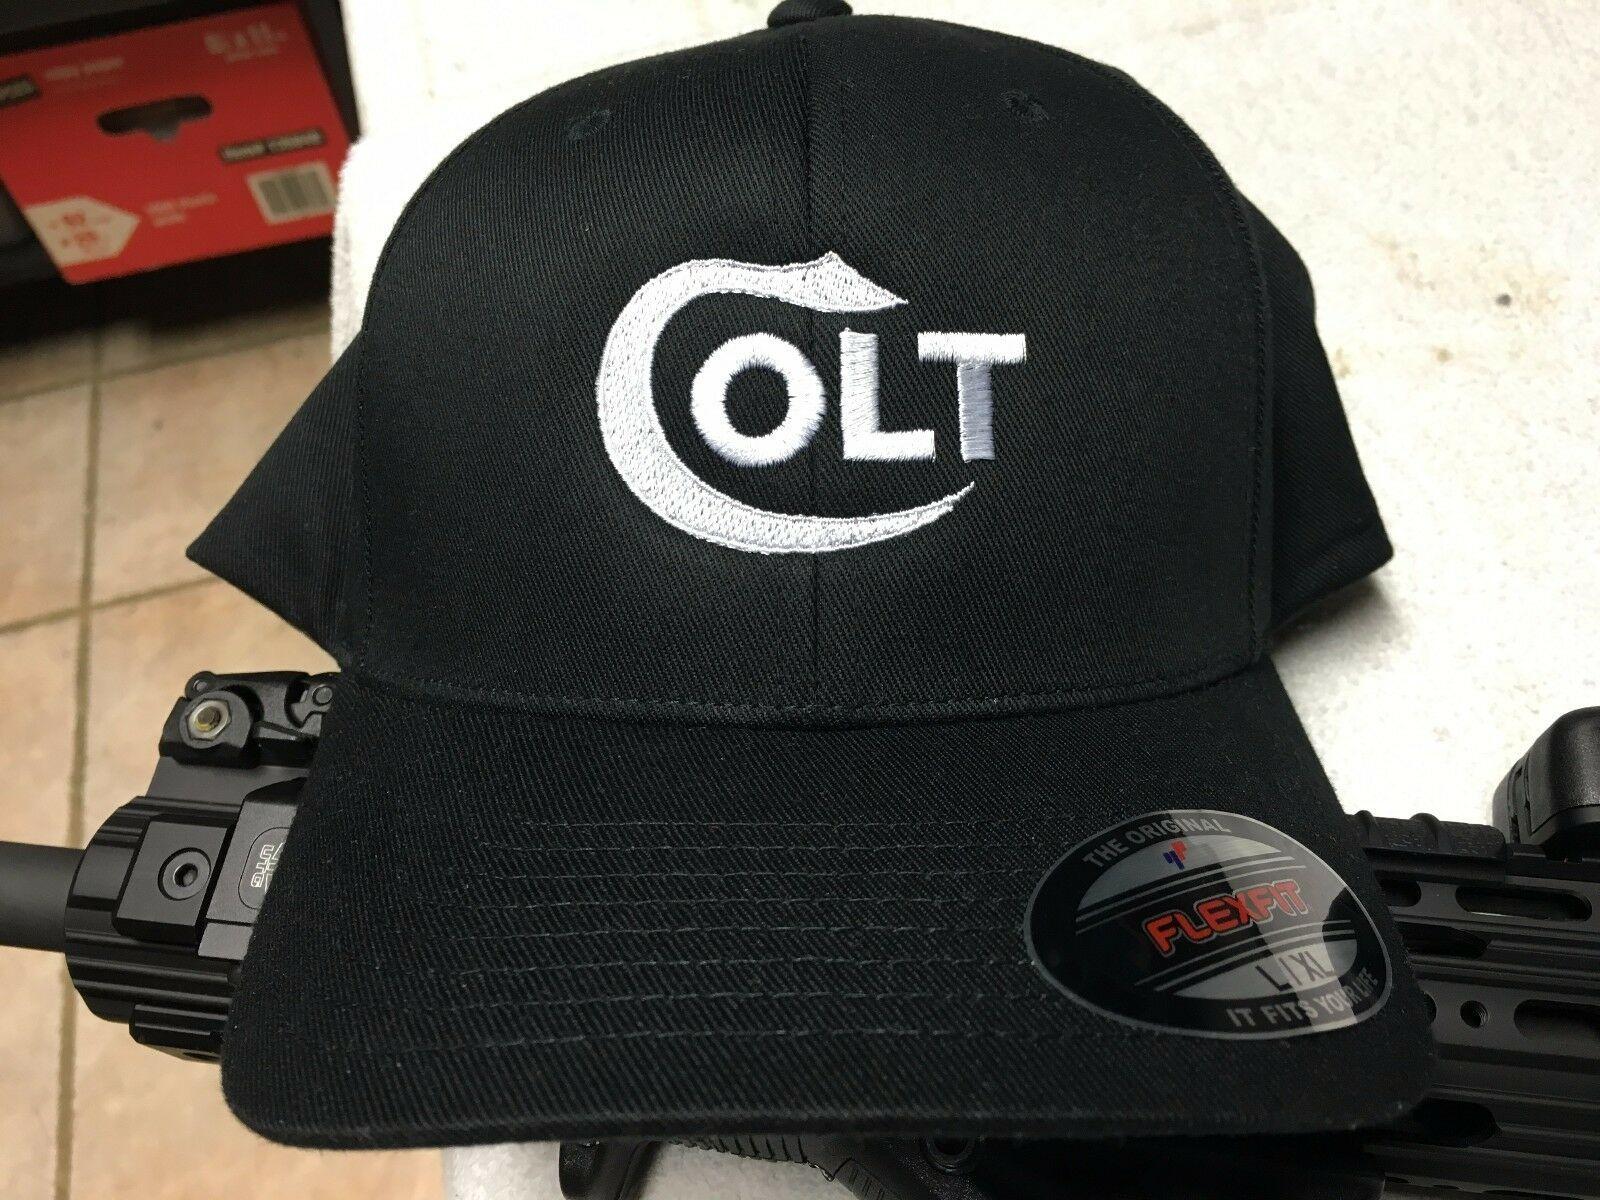 Blue Olive Logo - Colt Logo Embroidered Flexfit Ball Cap Hat Black Blue Olive Green or ...